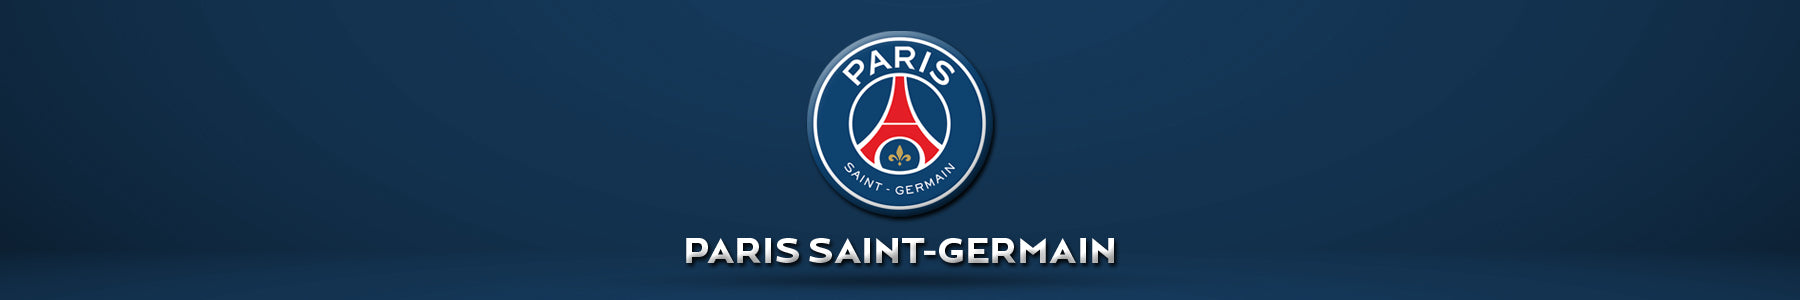 Paris Saint-Germain Banner